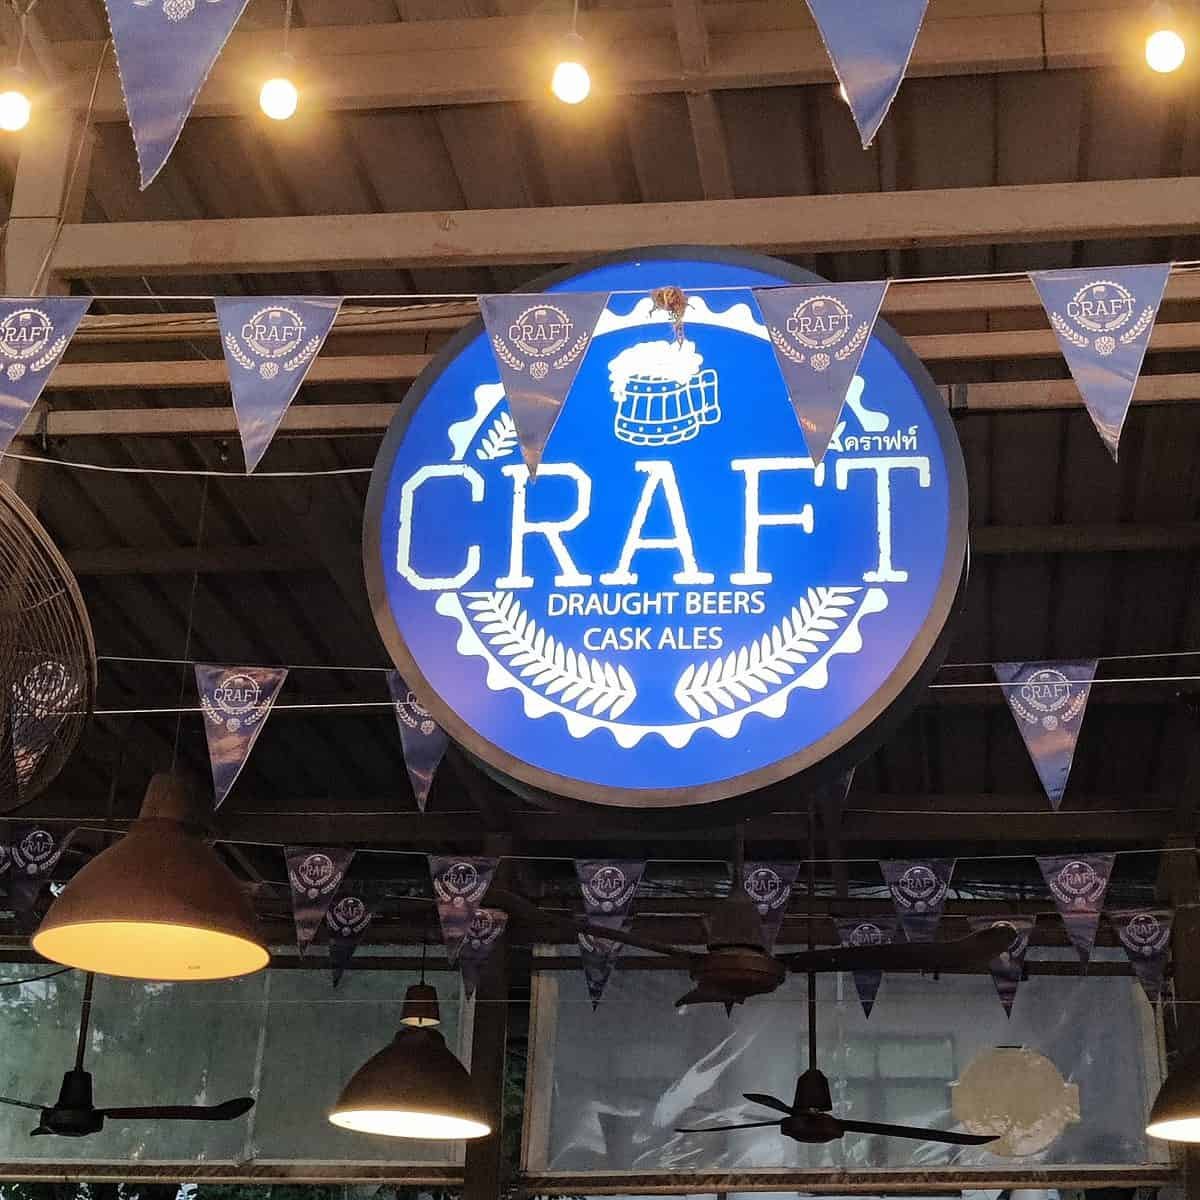 Craft Beer Bar light up sign Bangkok